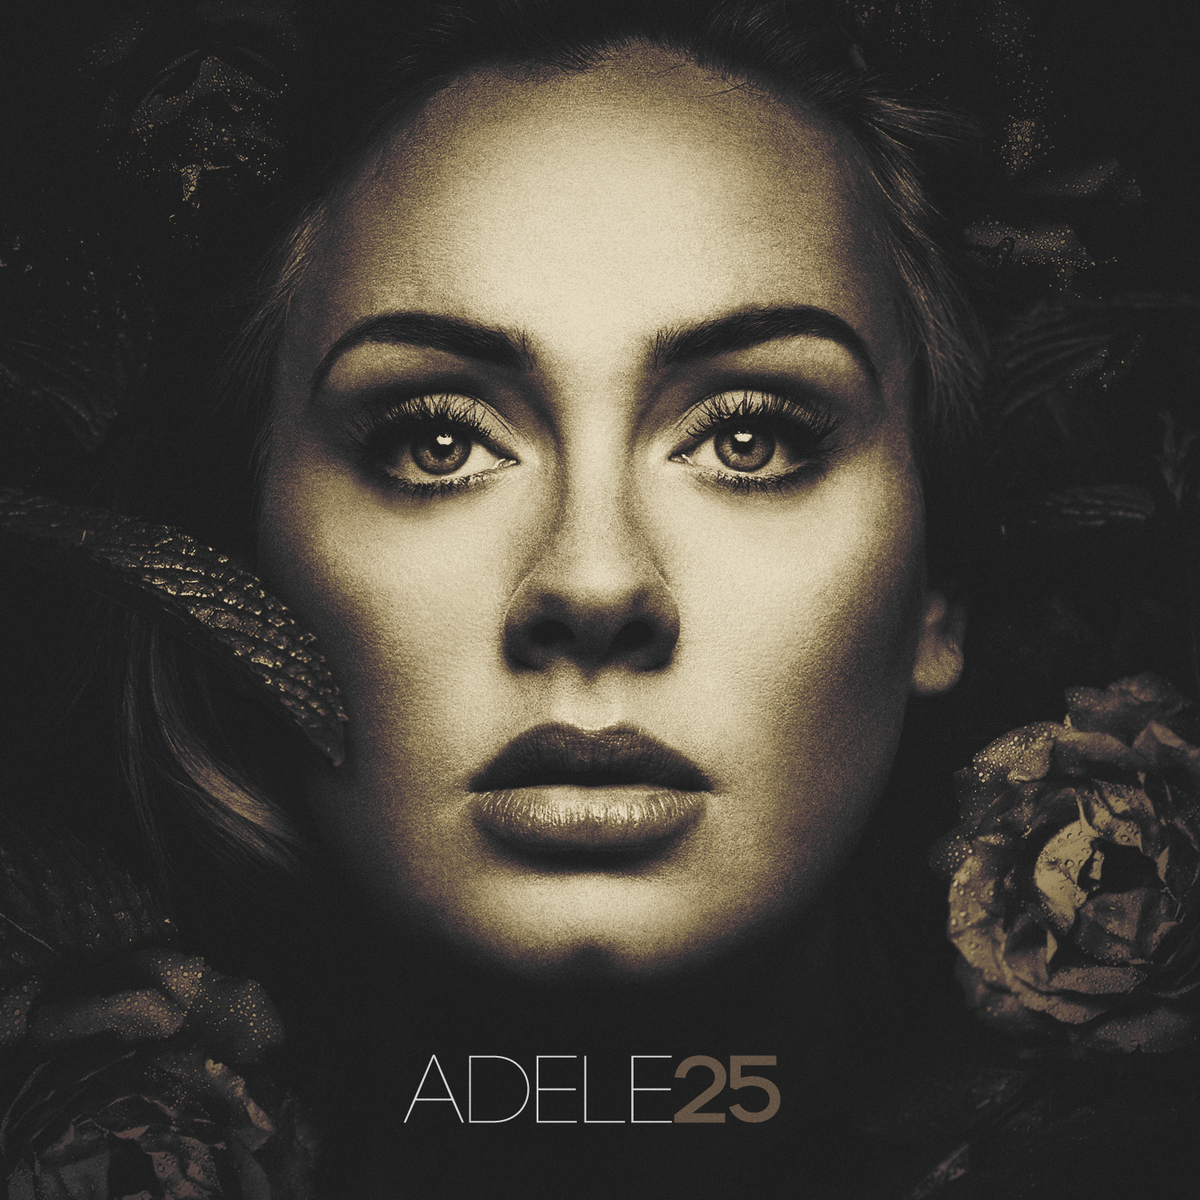 All I Ask Lyrics - Adele